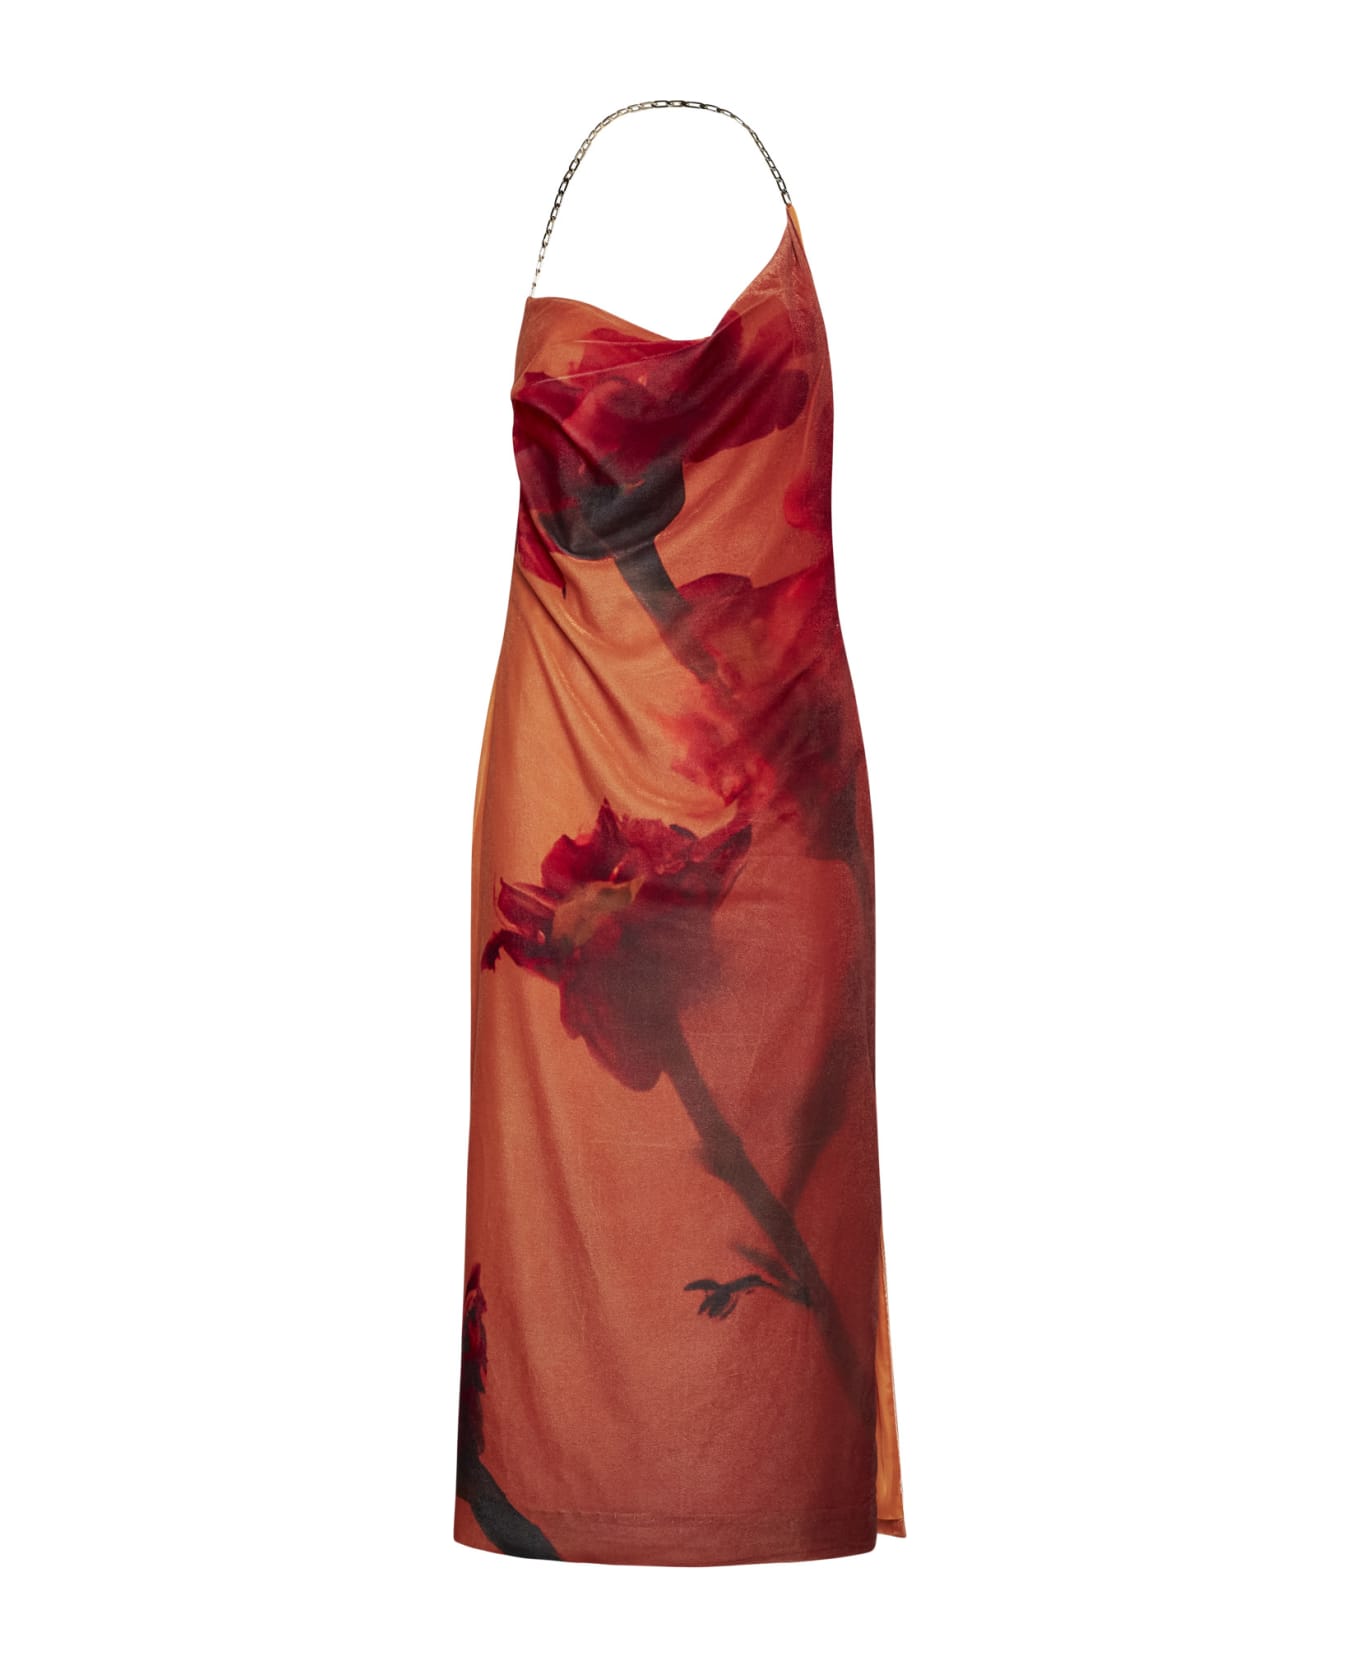 Stine Goya Dress - Flowers growing under orange w